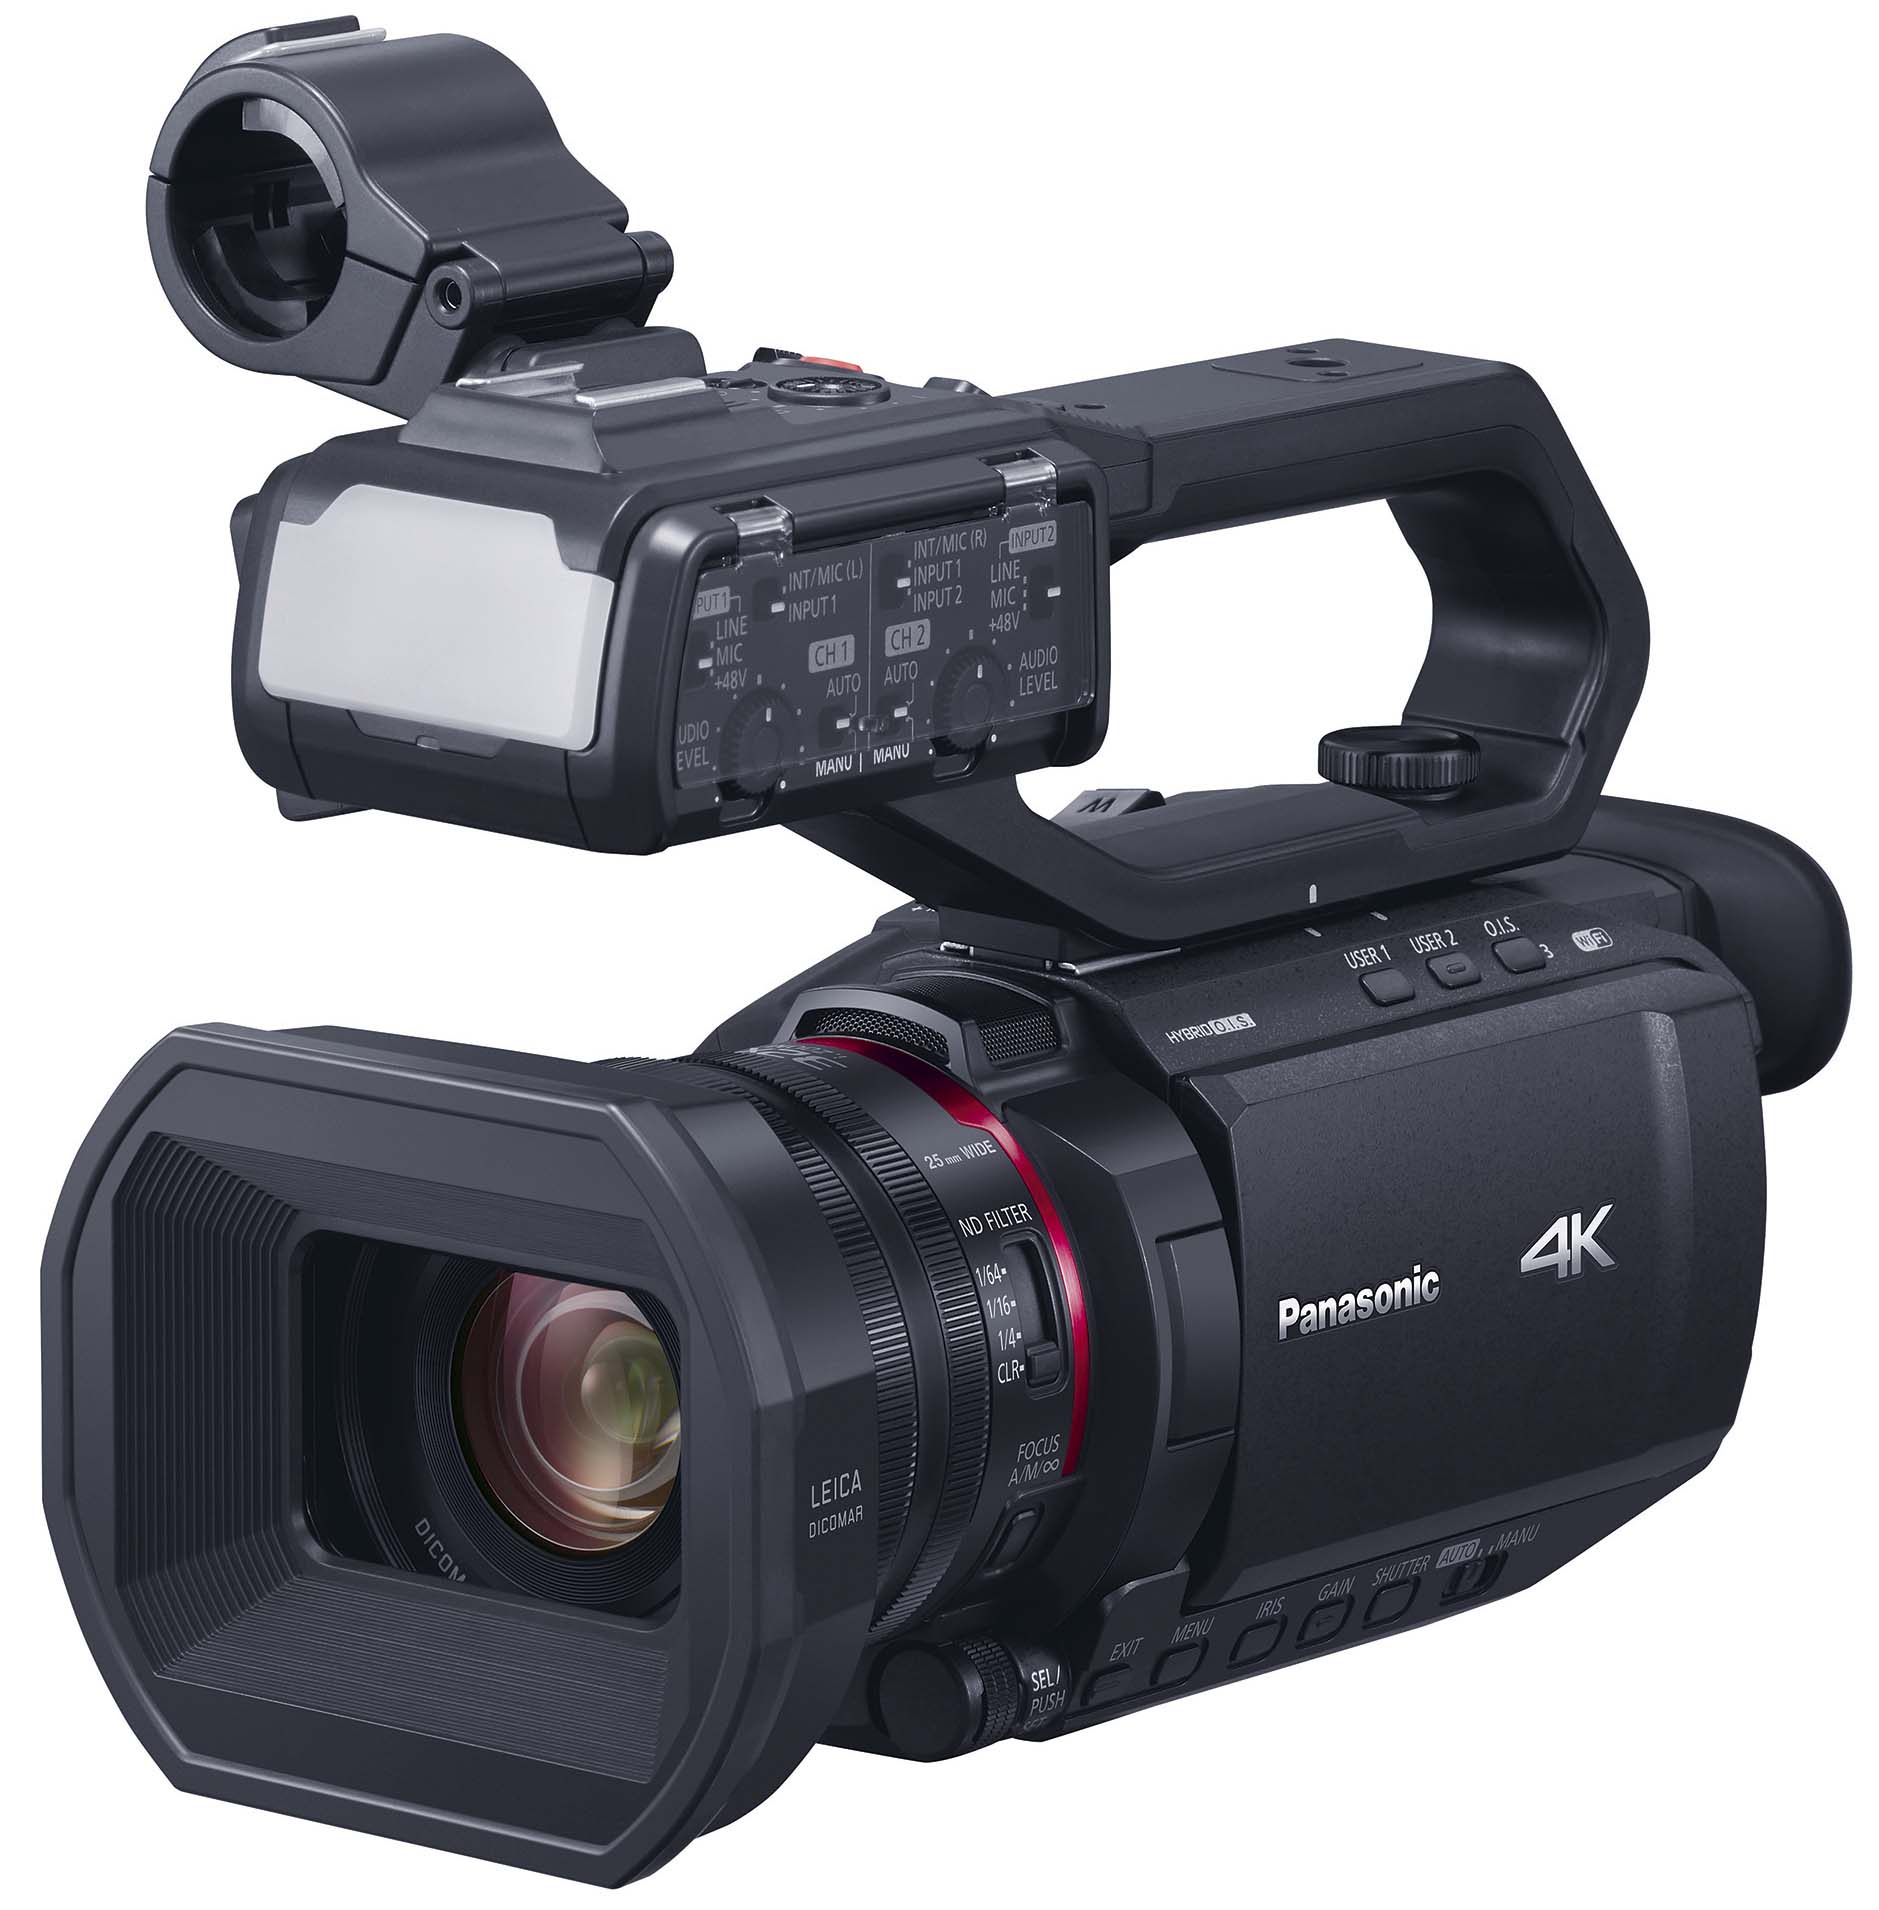 パナソニック、10bit 4K/60p内部記録対応のビデオカメラ2モデルを3月19日に発売 | VIDEO SALON